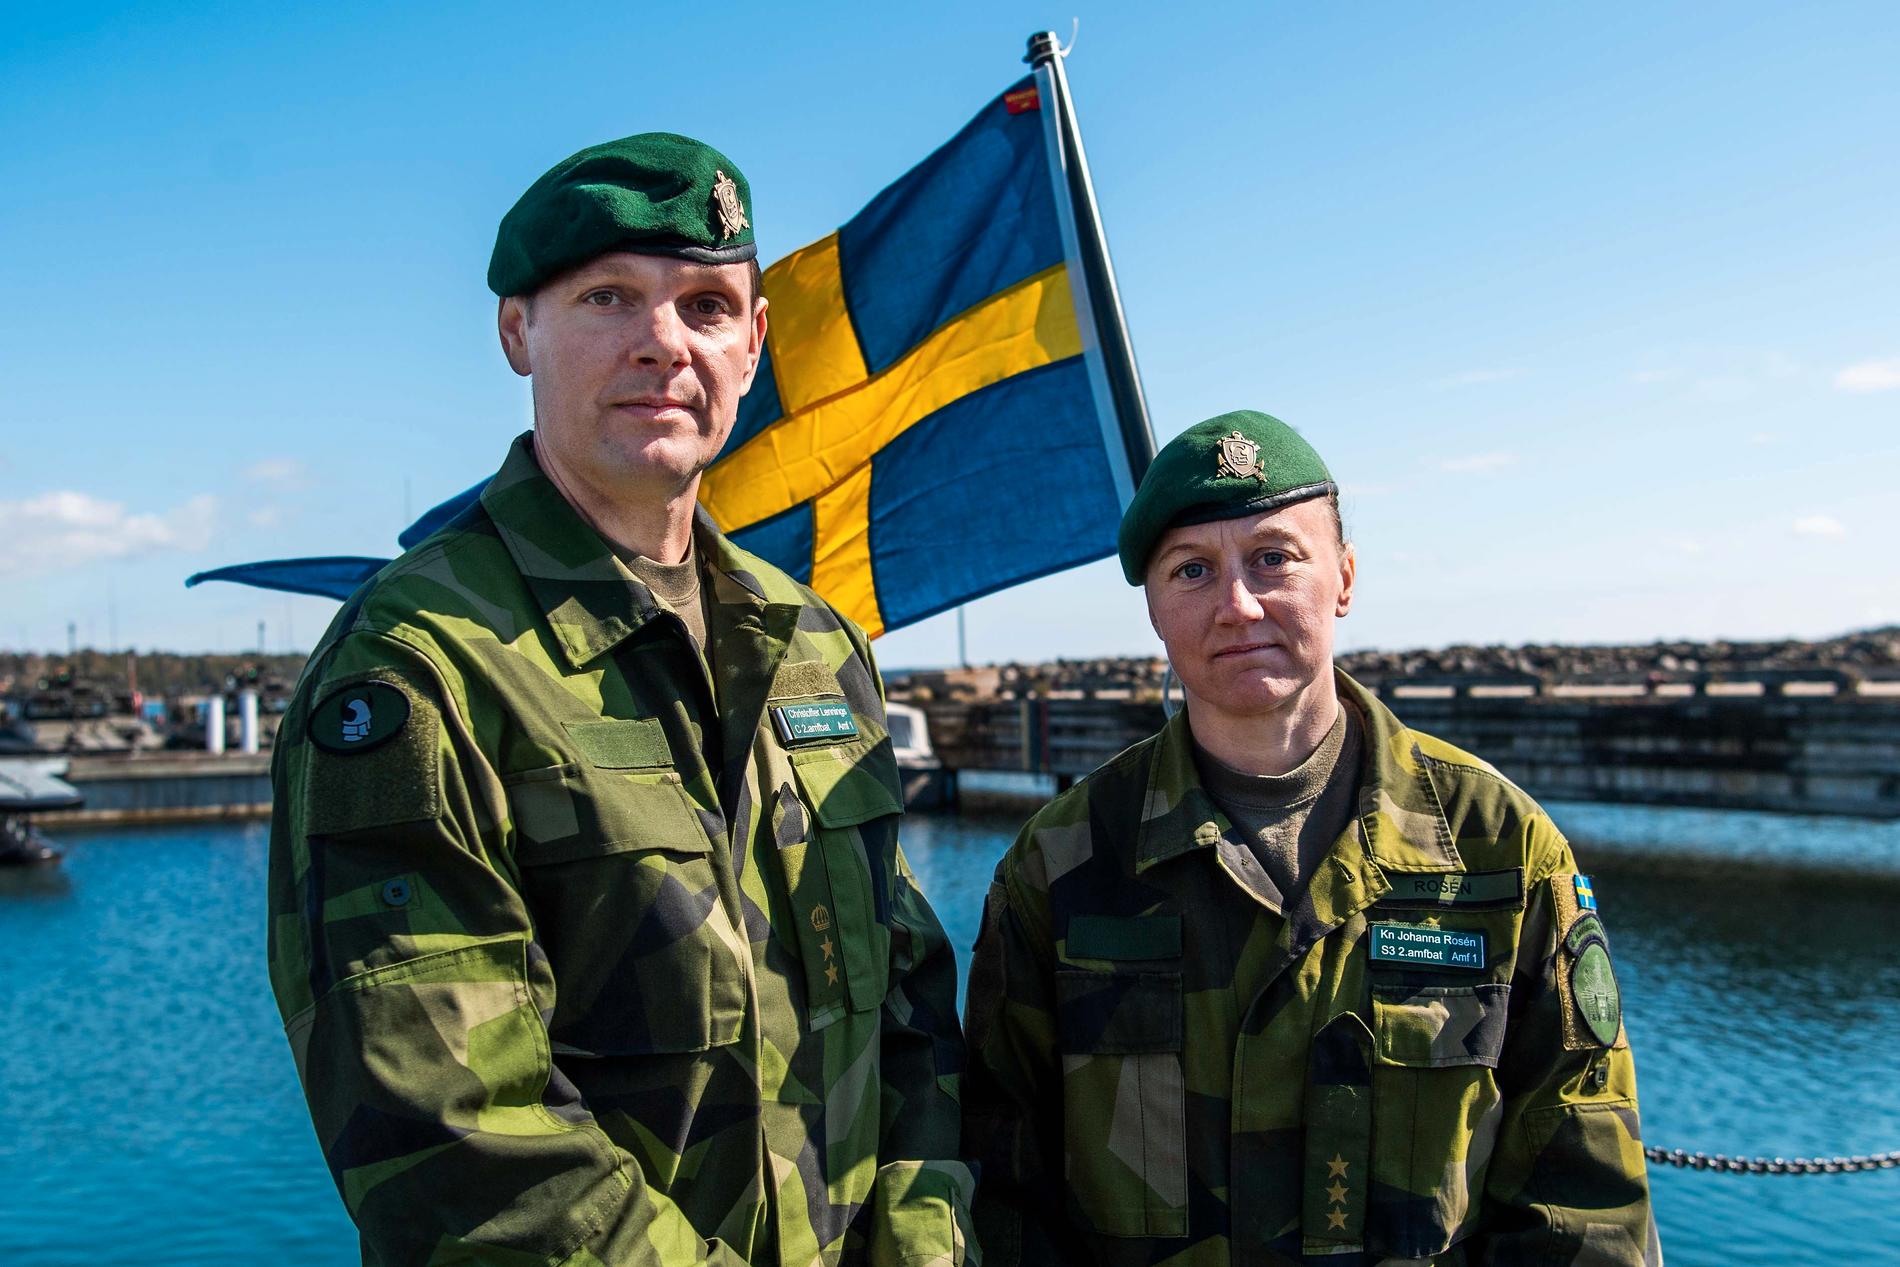 Överstelöjtnant Christoffer Lennings och kapten Johanna Rosén betonar likheterna mellan deras och Natos förband.